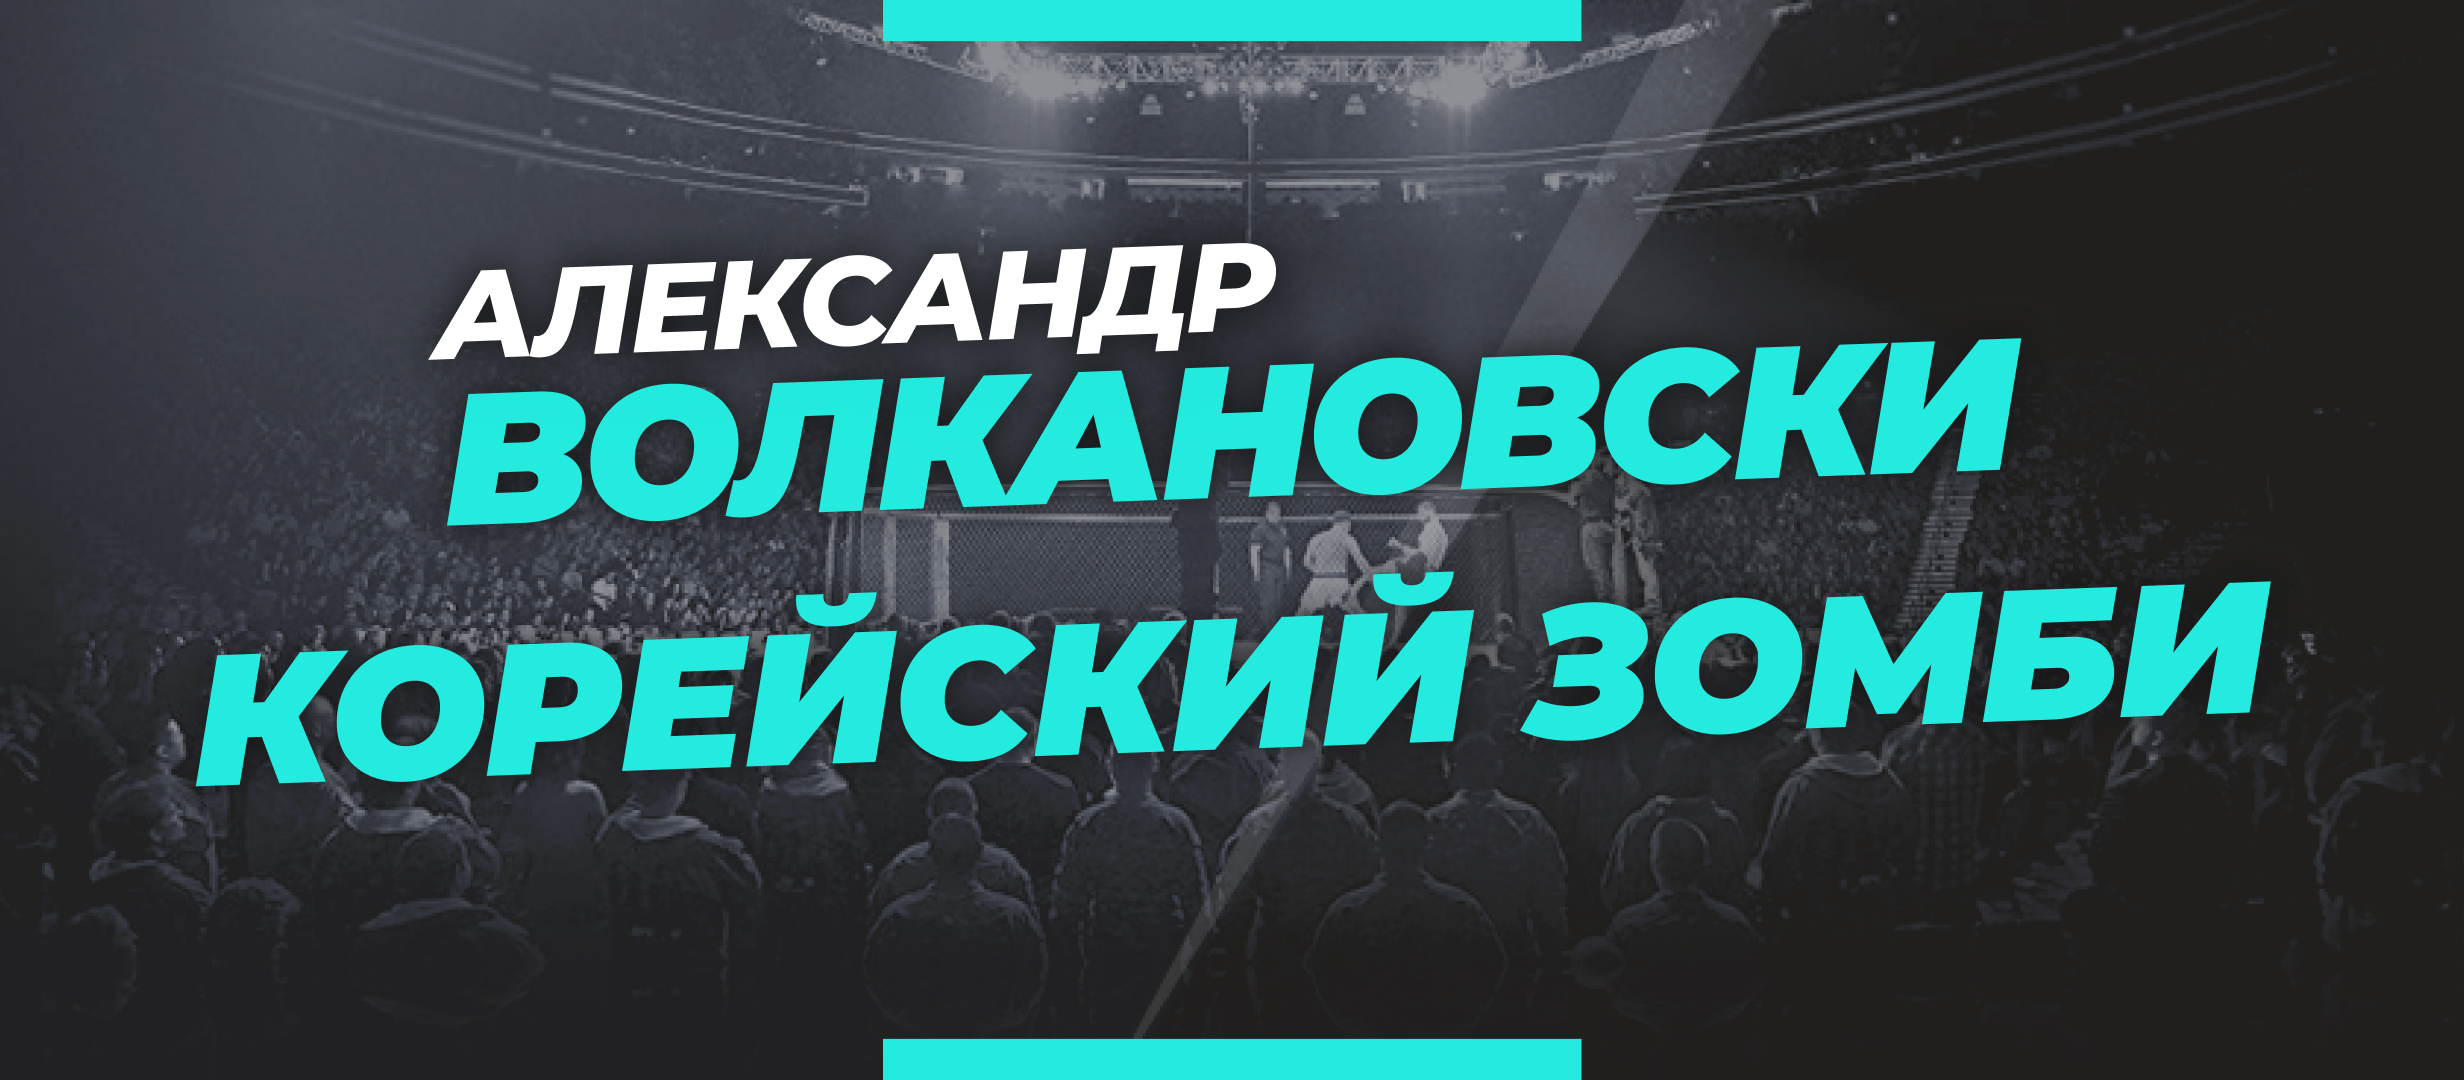 Волкановски — Корейский Зомби: прогноз и коэффициенты на бой UFC 273